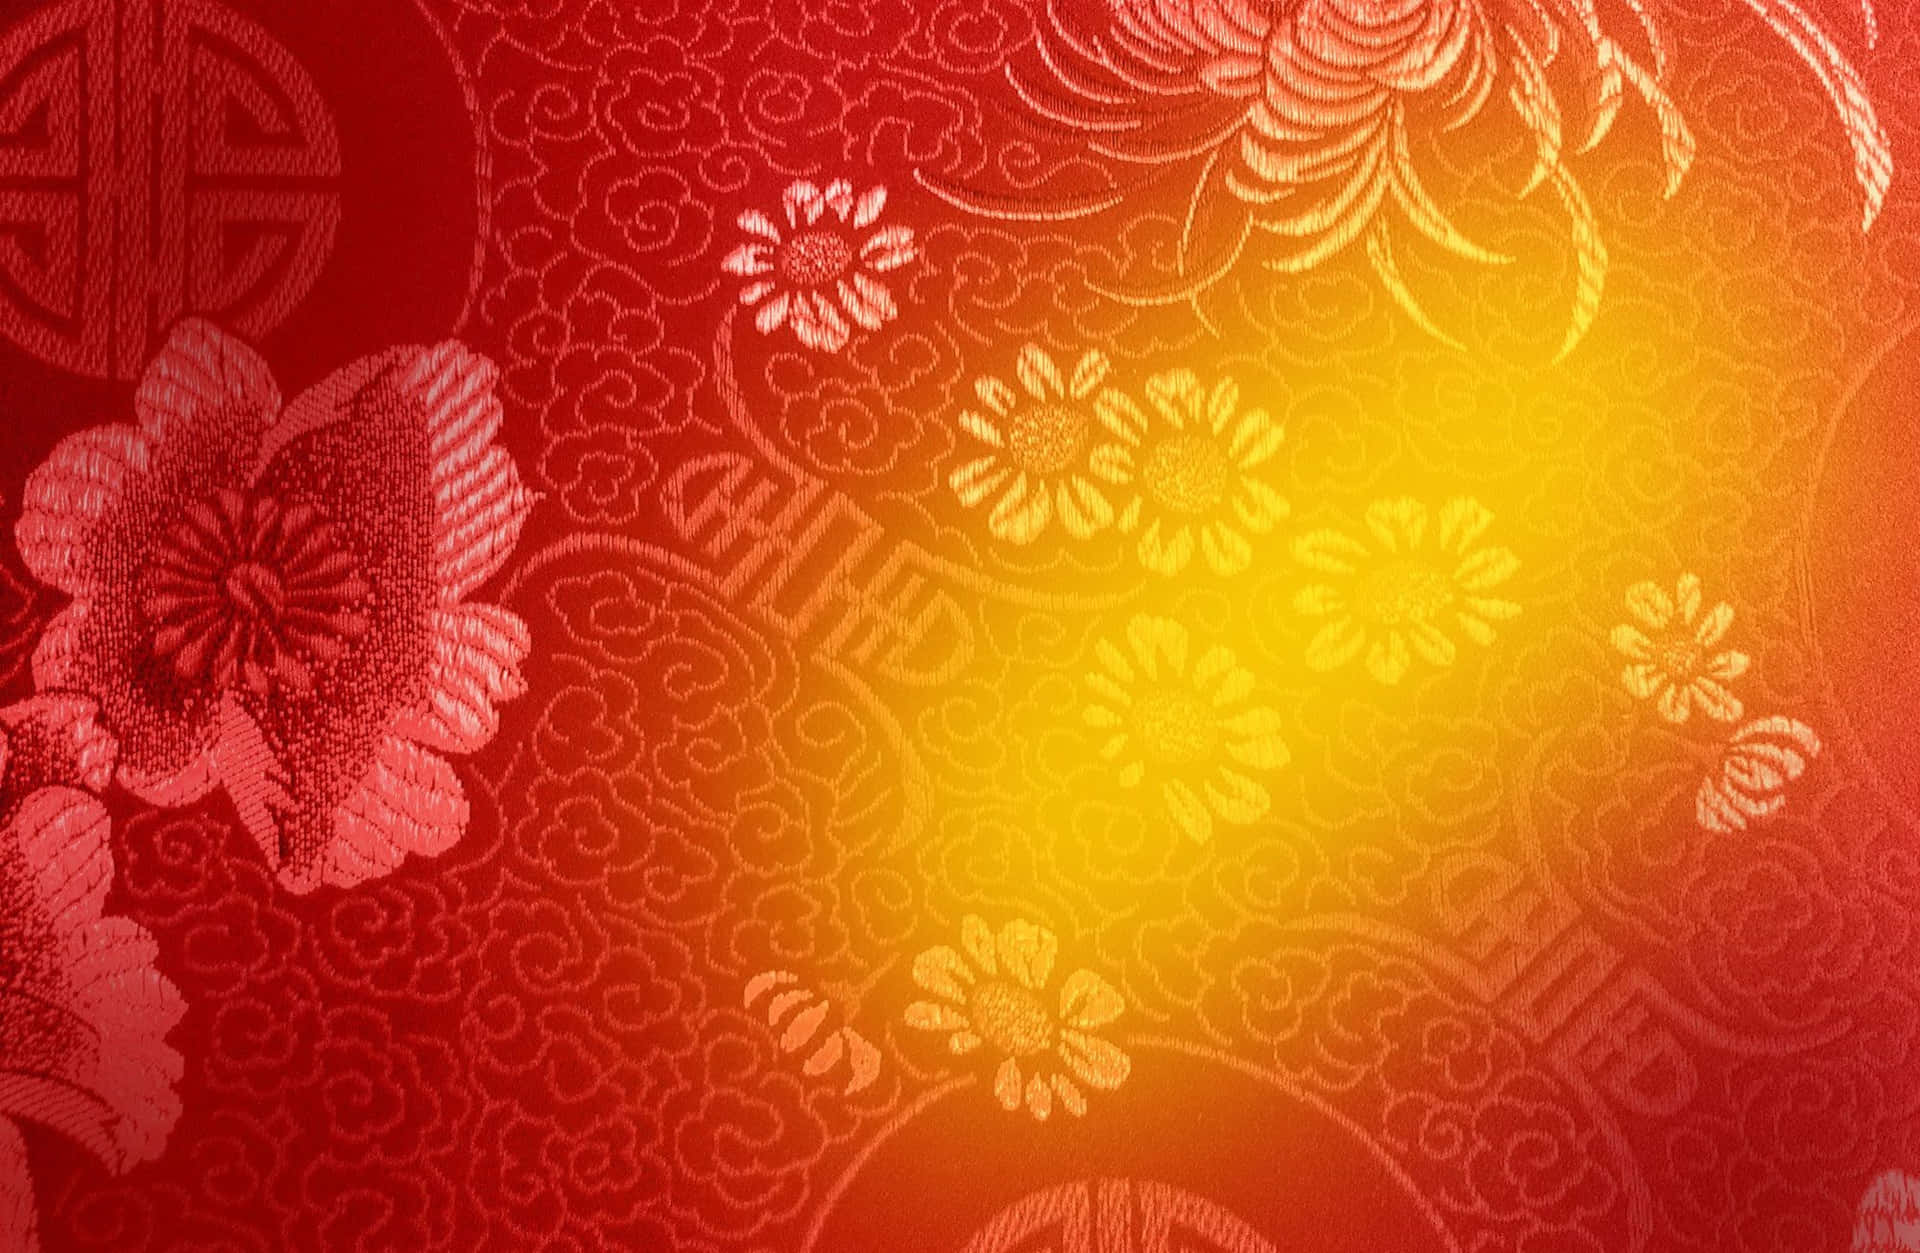 Einsymbol Der Freude Und Des Wohlstands - Ein Festlicher Goldener Hintergrund Zum Chinesischen Neujahr.